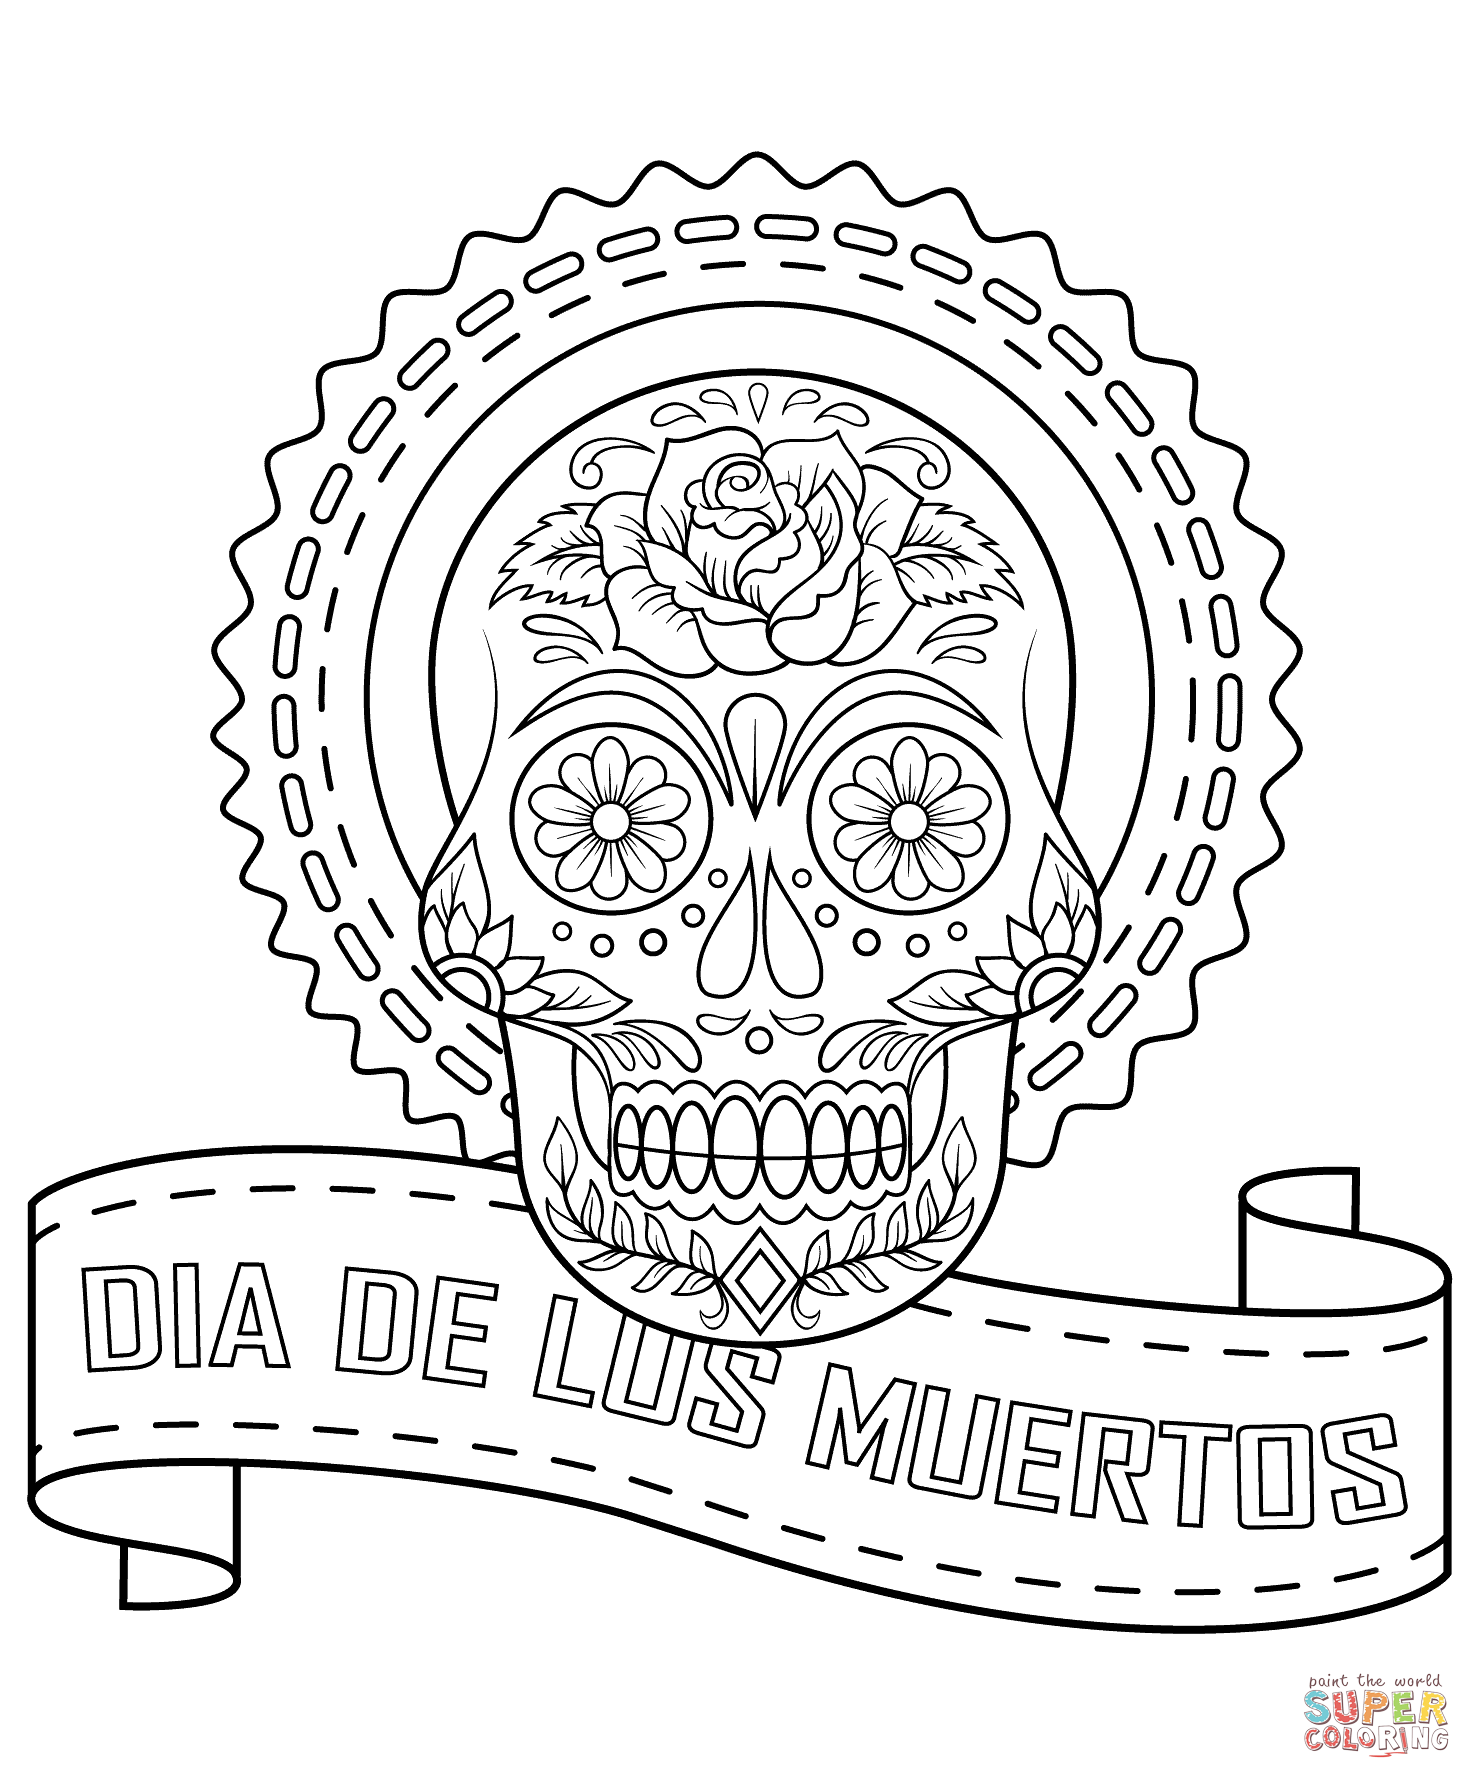 Dia De Los Muertos Sugar Skull coloring page | Free Printable ...